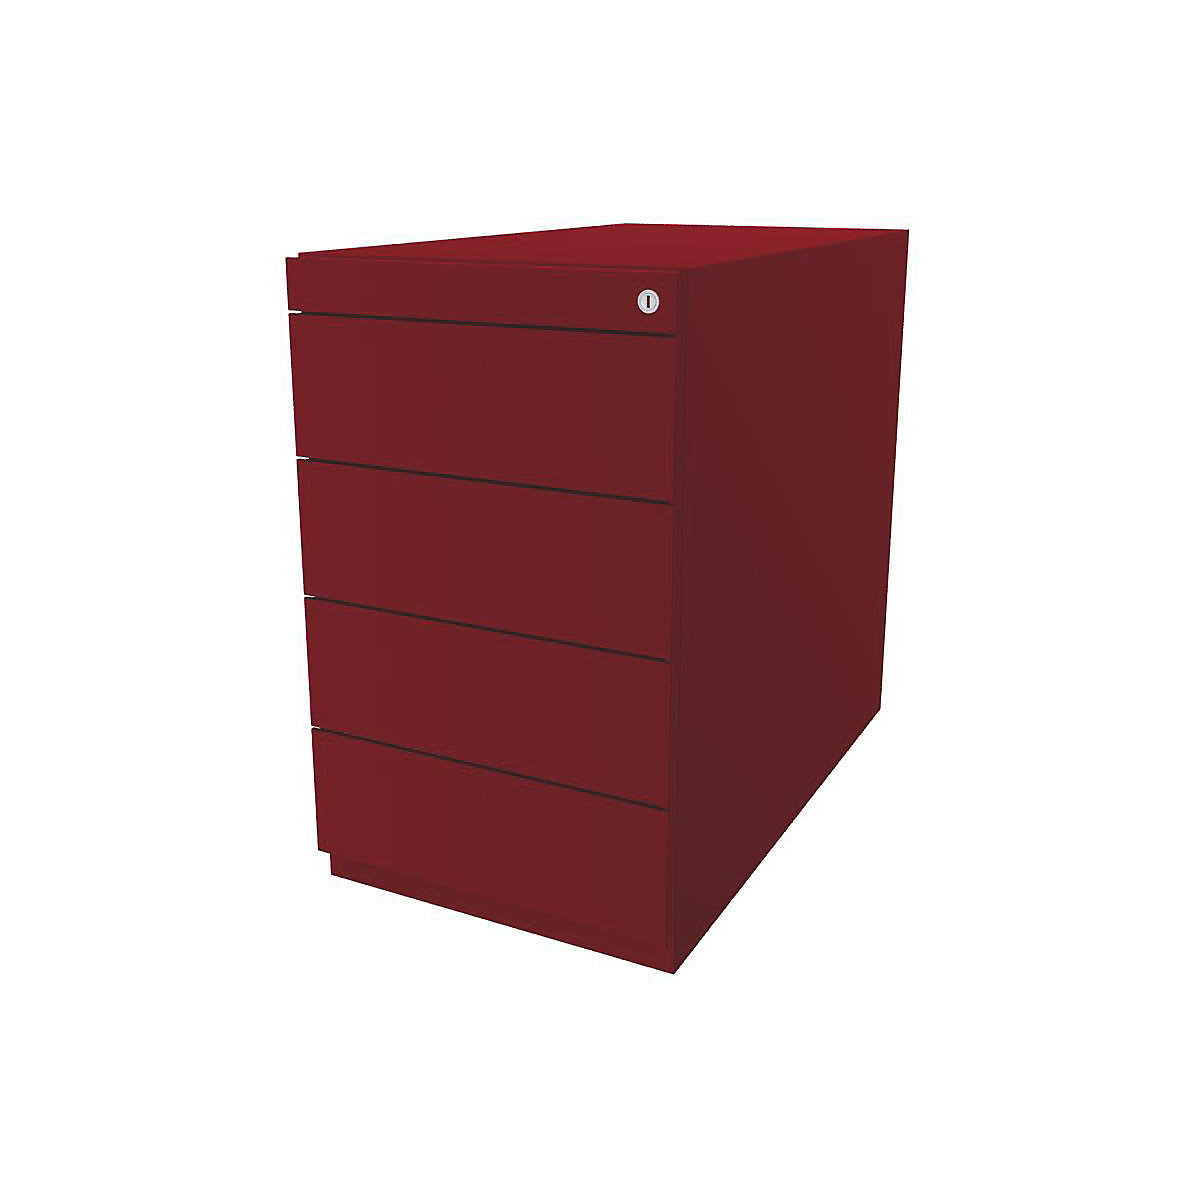 BISLEY Standcontainer Note™, mit 4 Universalschubladen, Tiefe 775 mm, kardinalrot